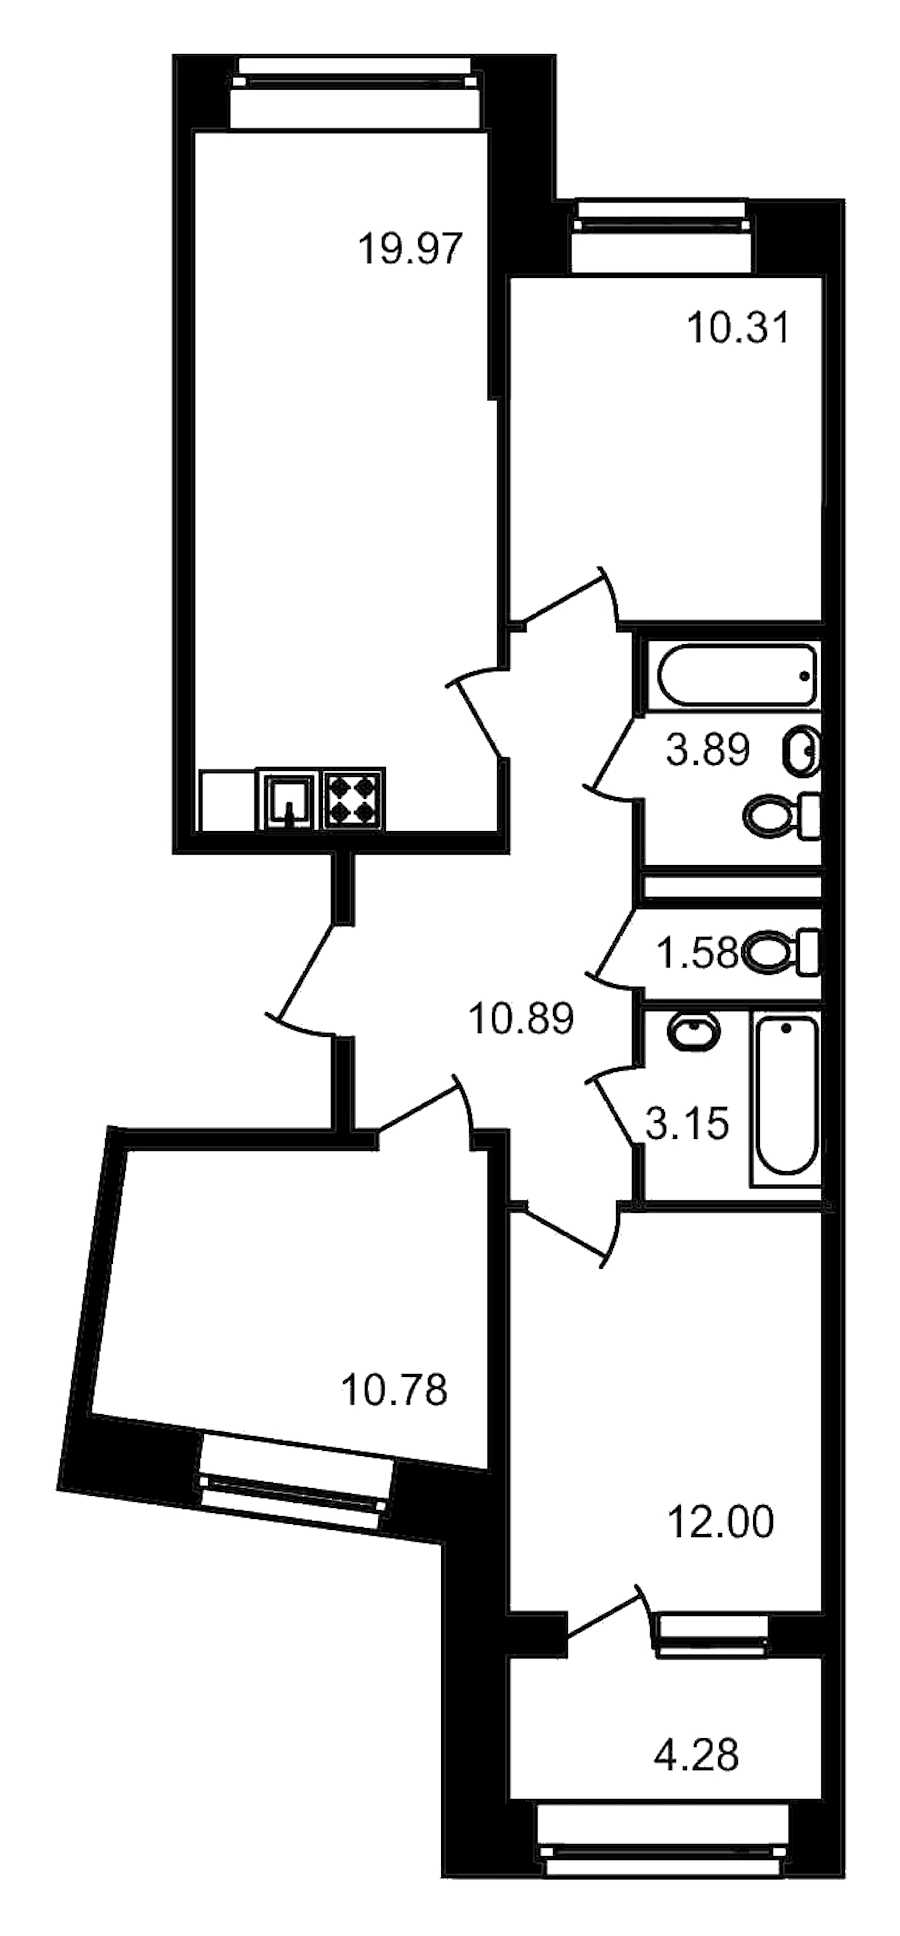 Трехкомнатная квартира в ЦДС: площадь 76.85 м2 , этаж: 4 – купить в Санкт-Петербурге